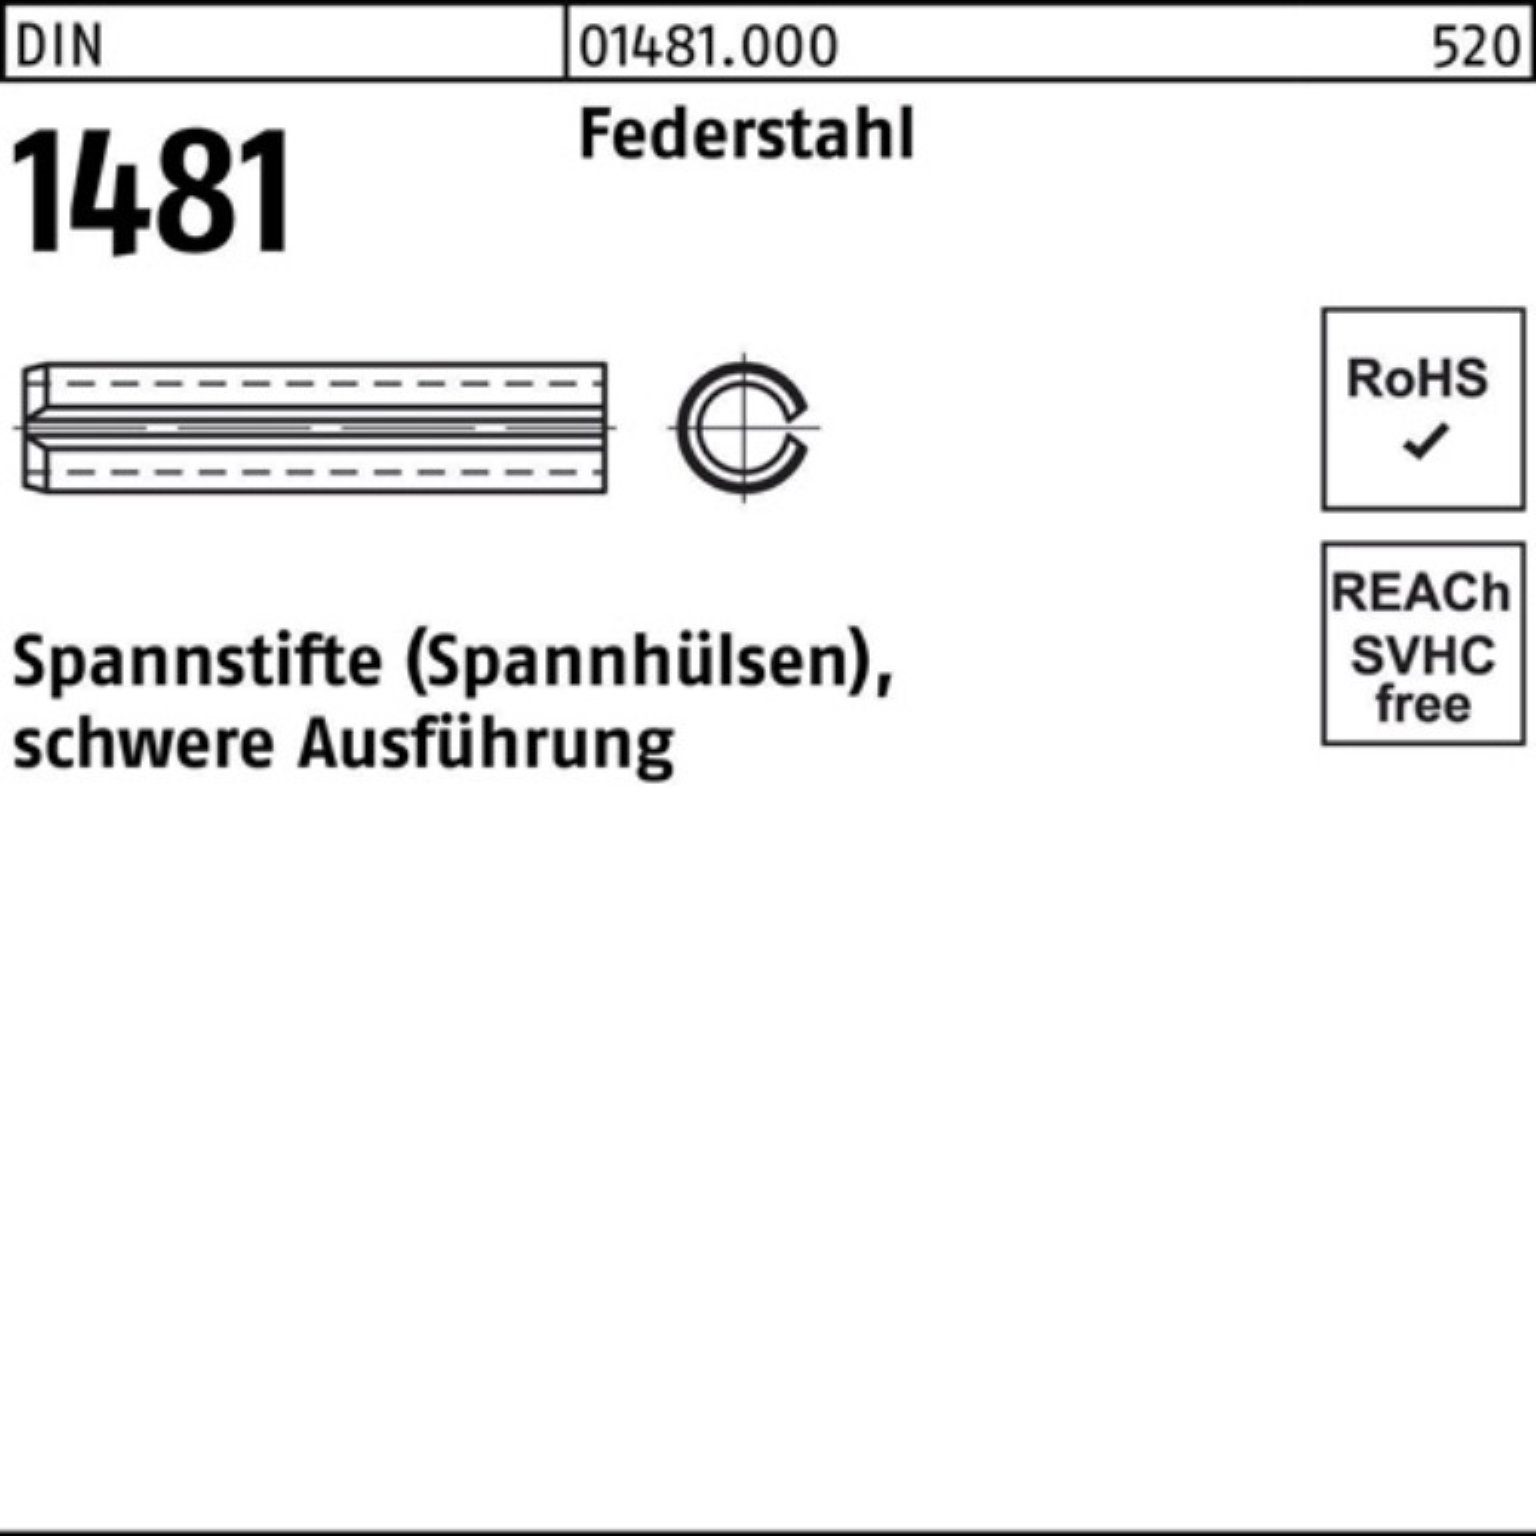 Reyher Spannstift 500er Pack Spannstift DIN 1481 10x 14 Federstahl schwere Ausführung 5